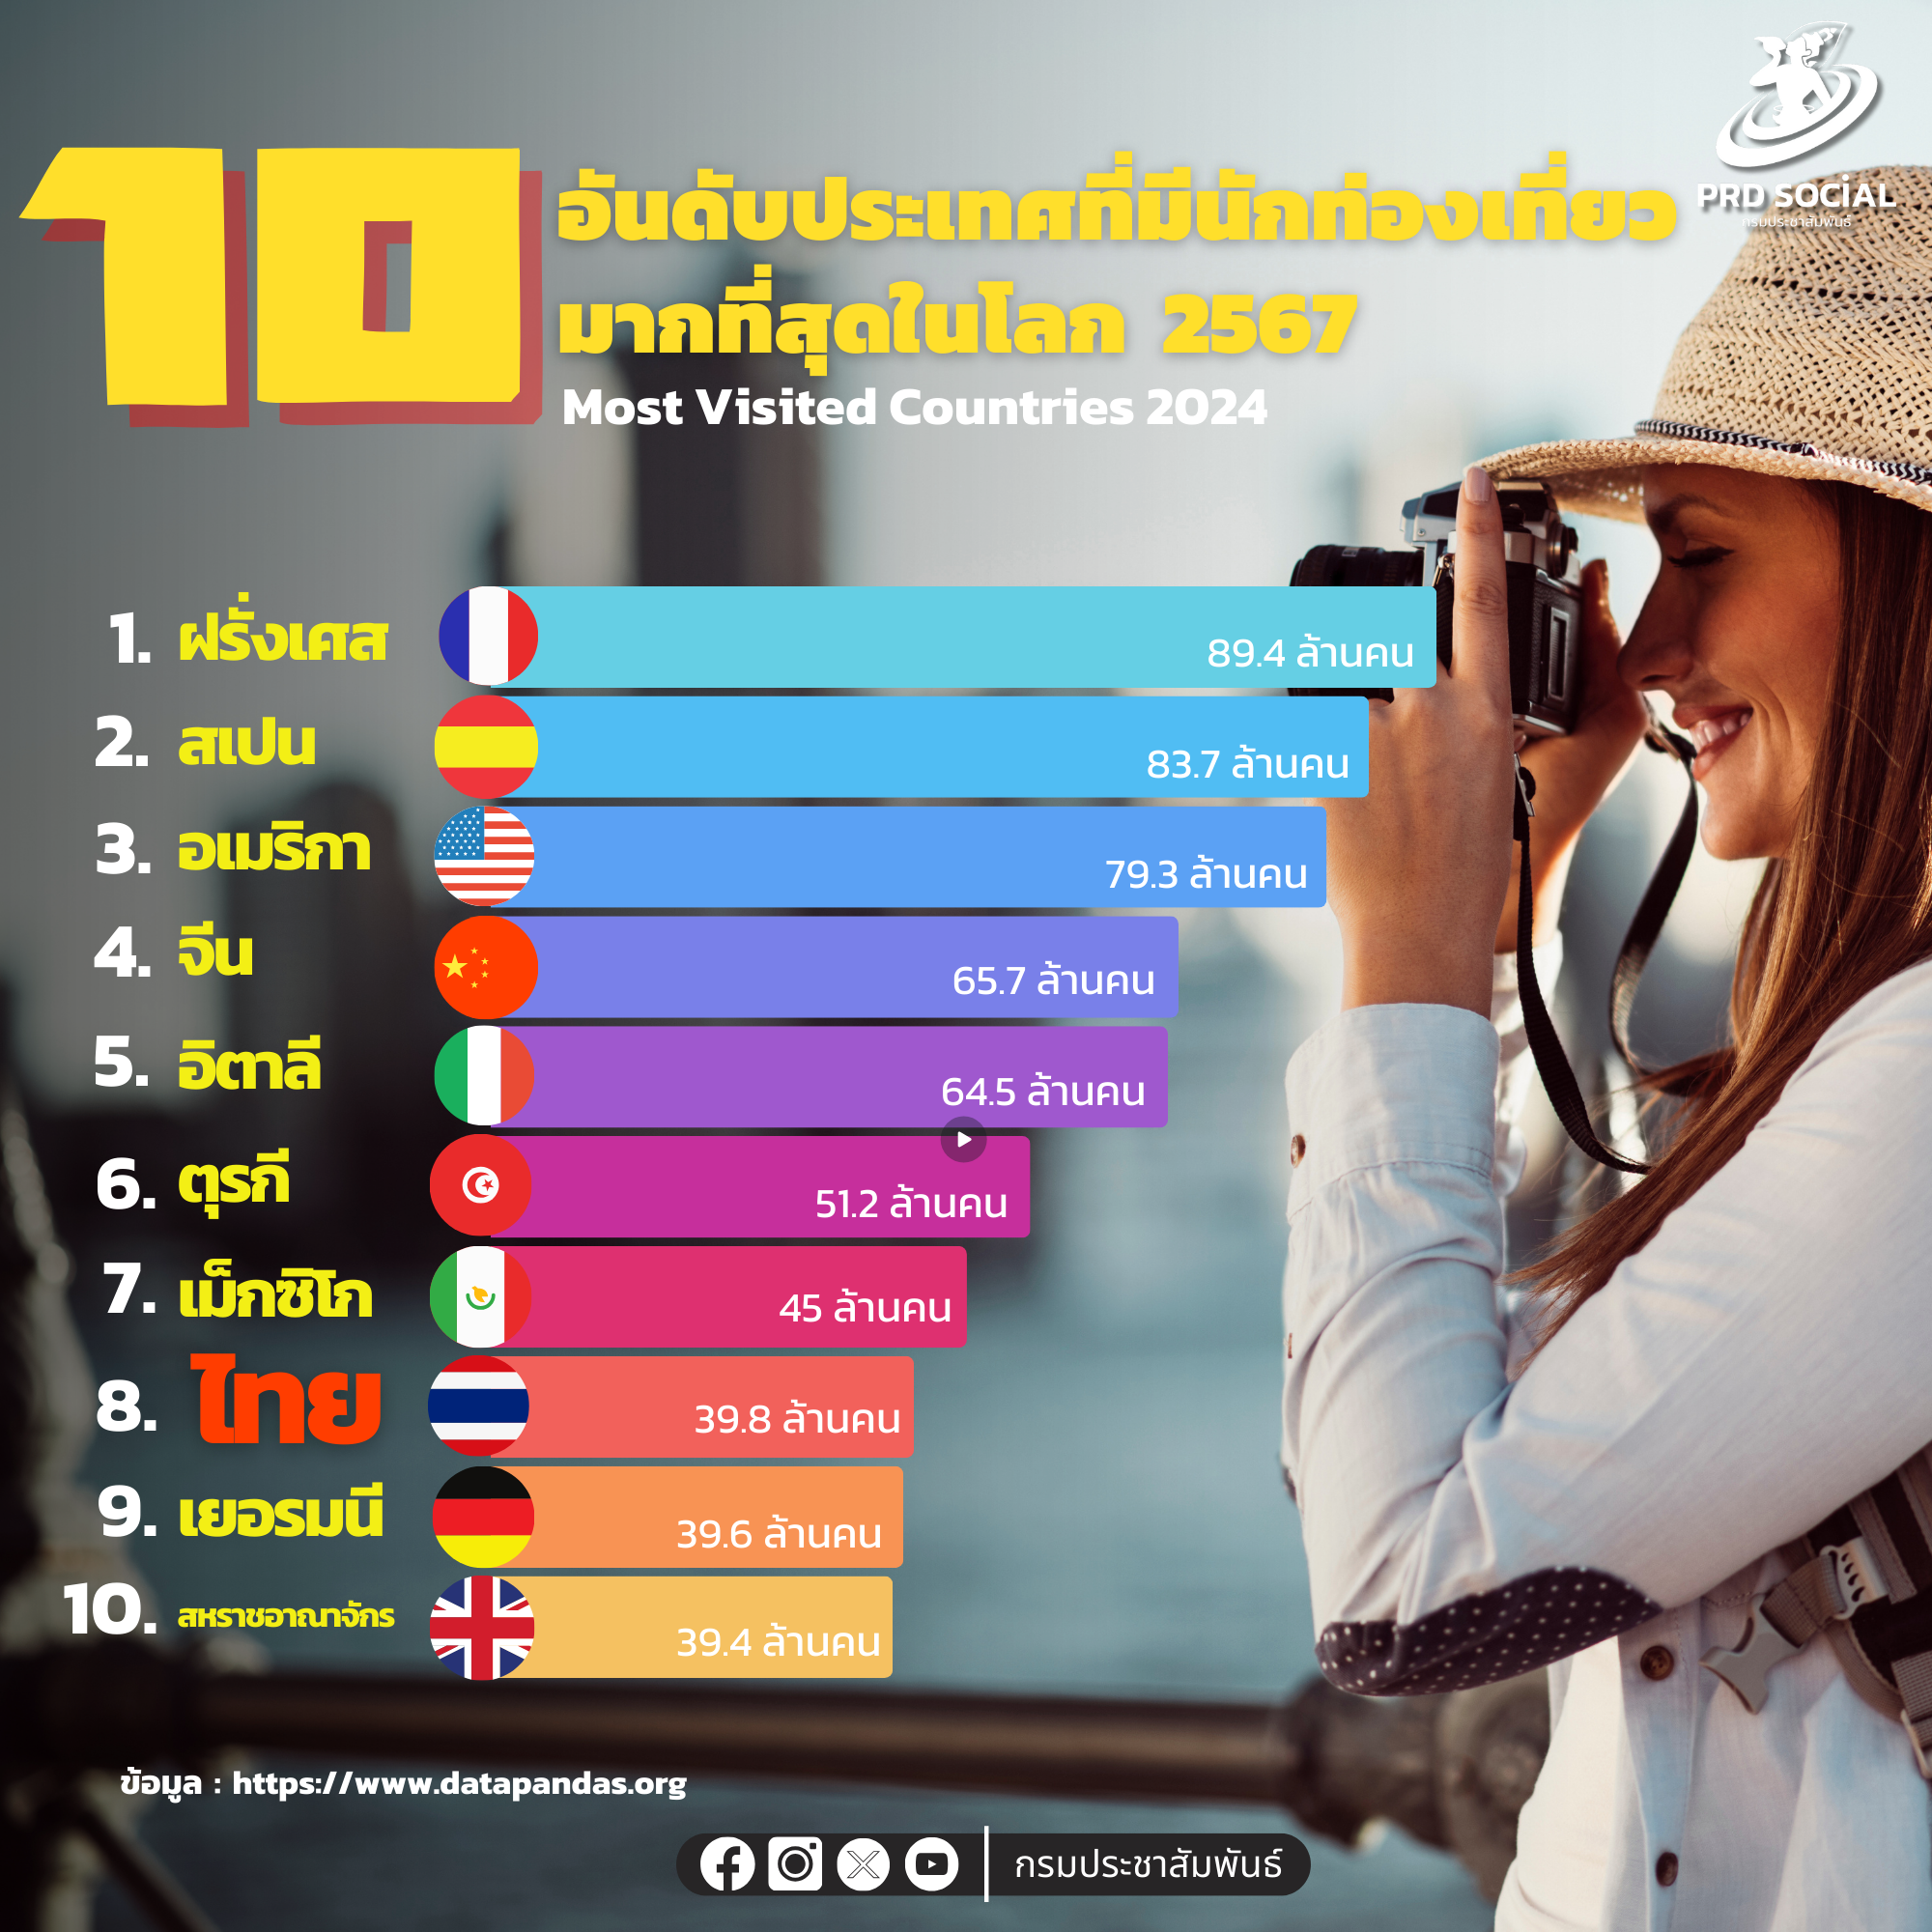 10 ประเทศที่มีนักท่องเที่ยวมากที่สุดในโลก